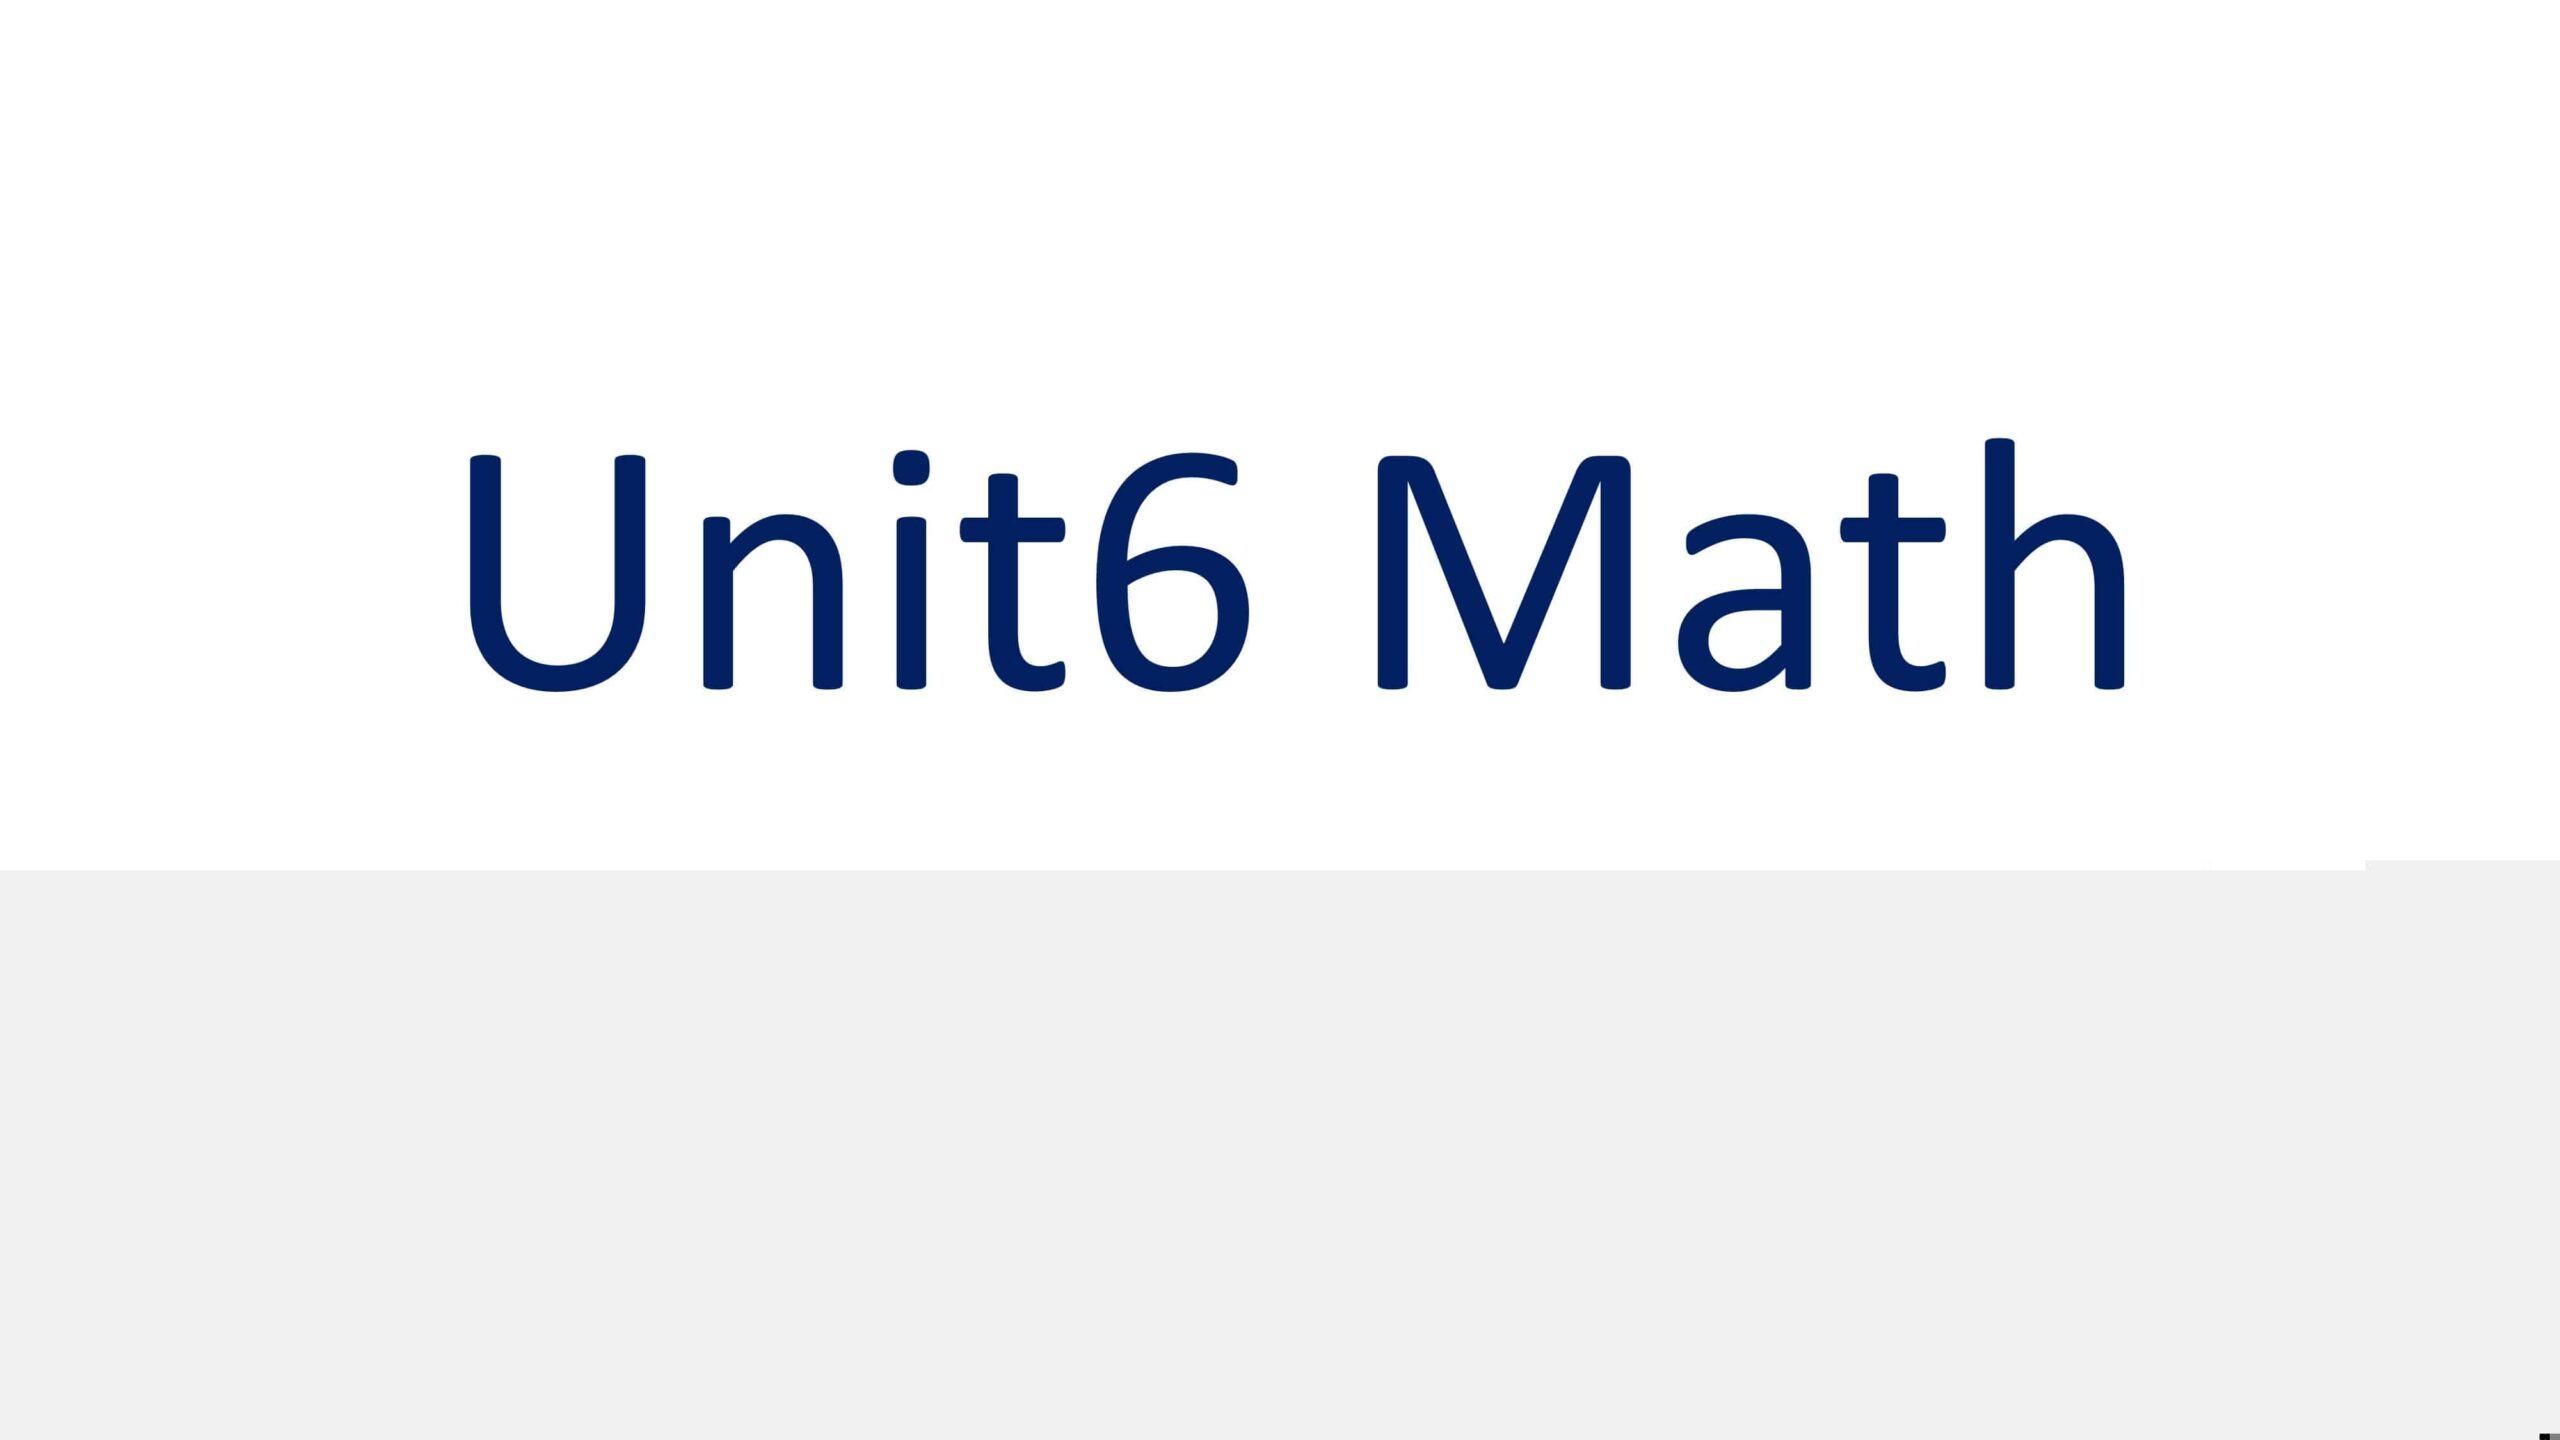 هيكل الوحدة السادسة الرياضيات المتكاملة الصف العاشر